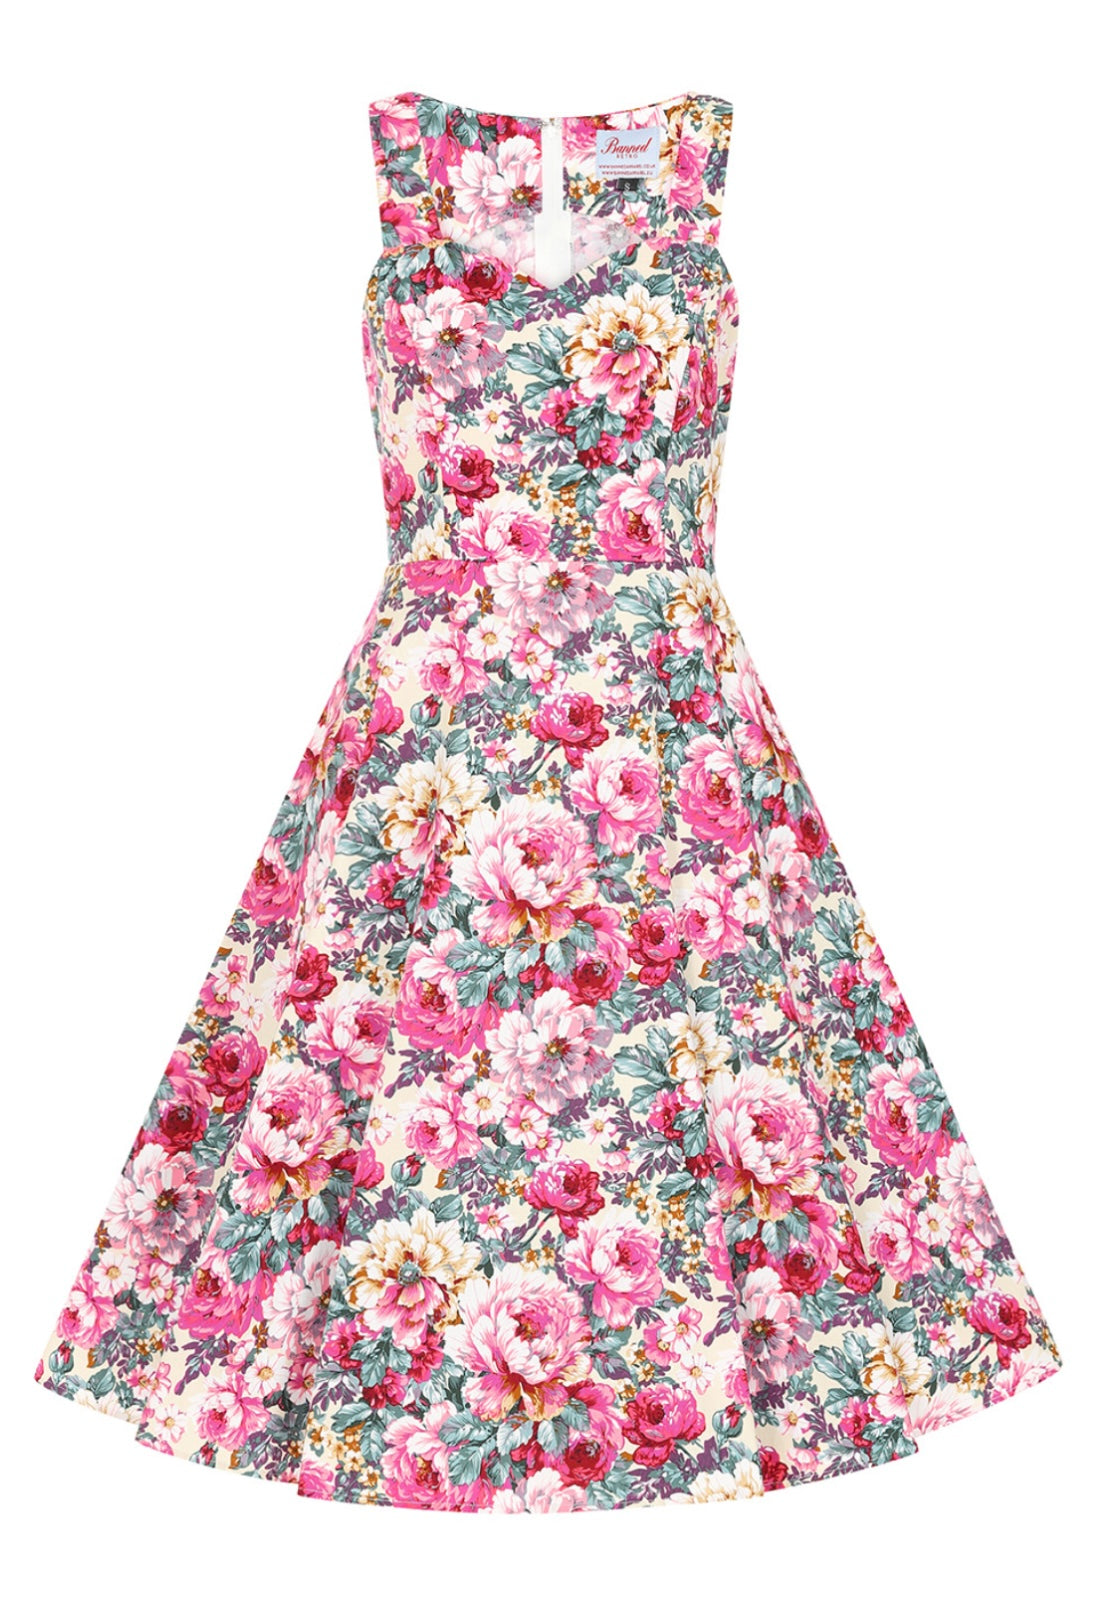 Bloom antique floral Dress